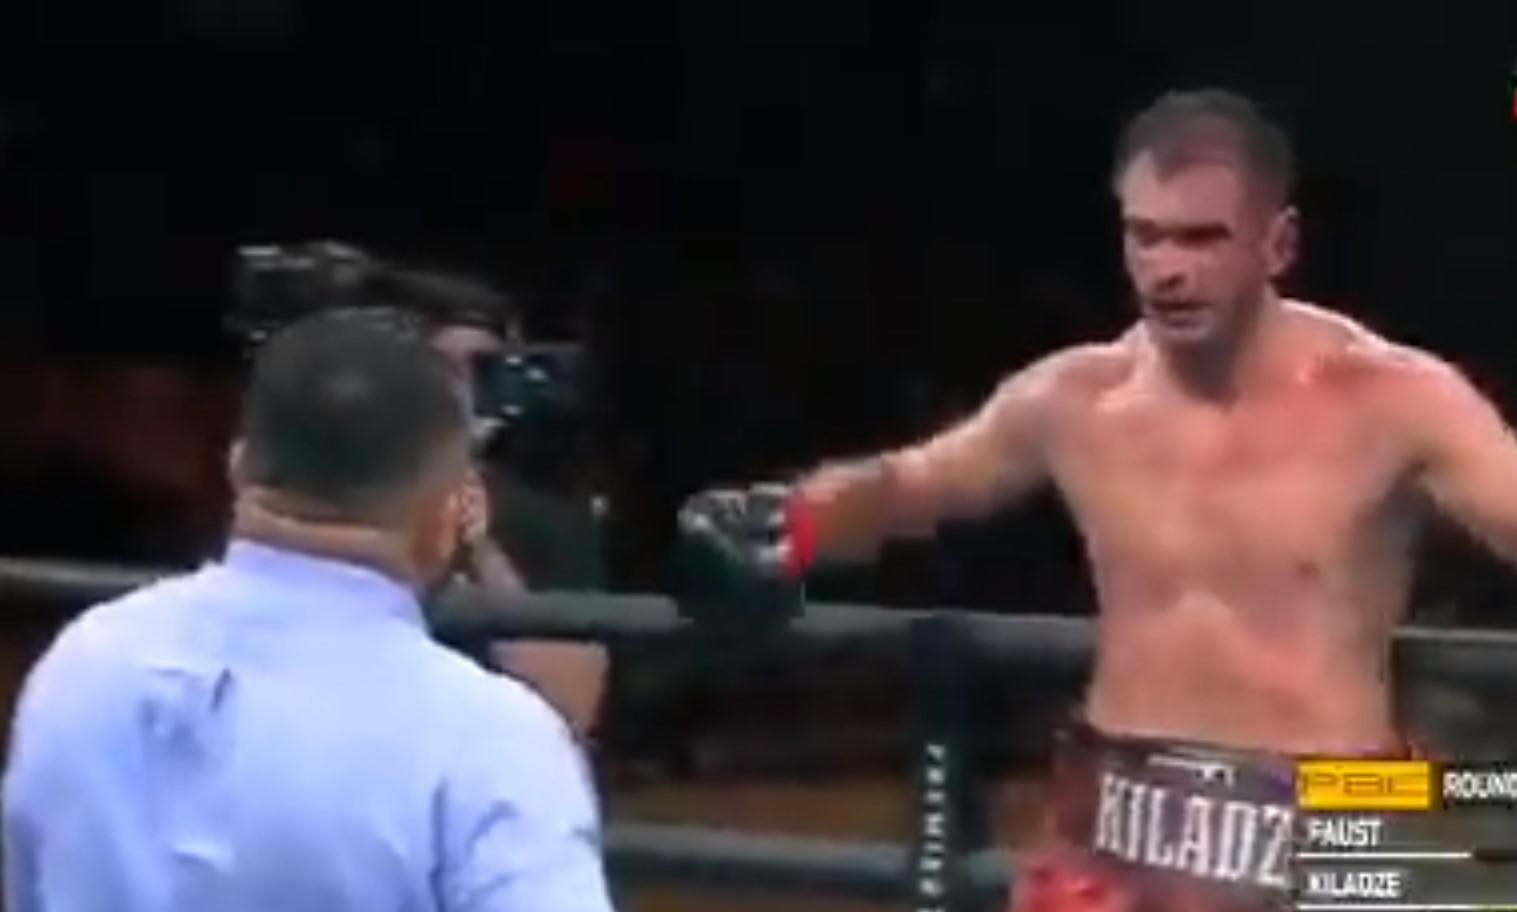 Gruzijski bokser nije dobro podnio odluku sudije, pa ga je udario